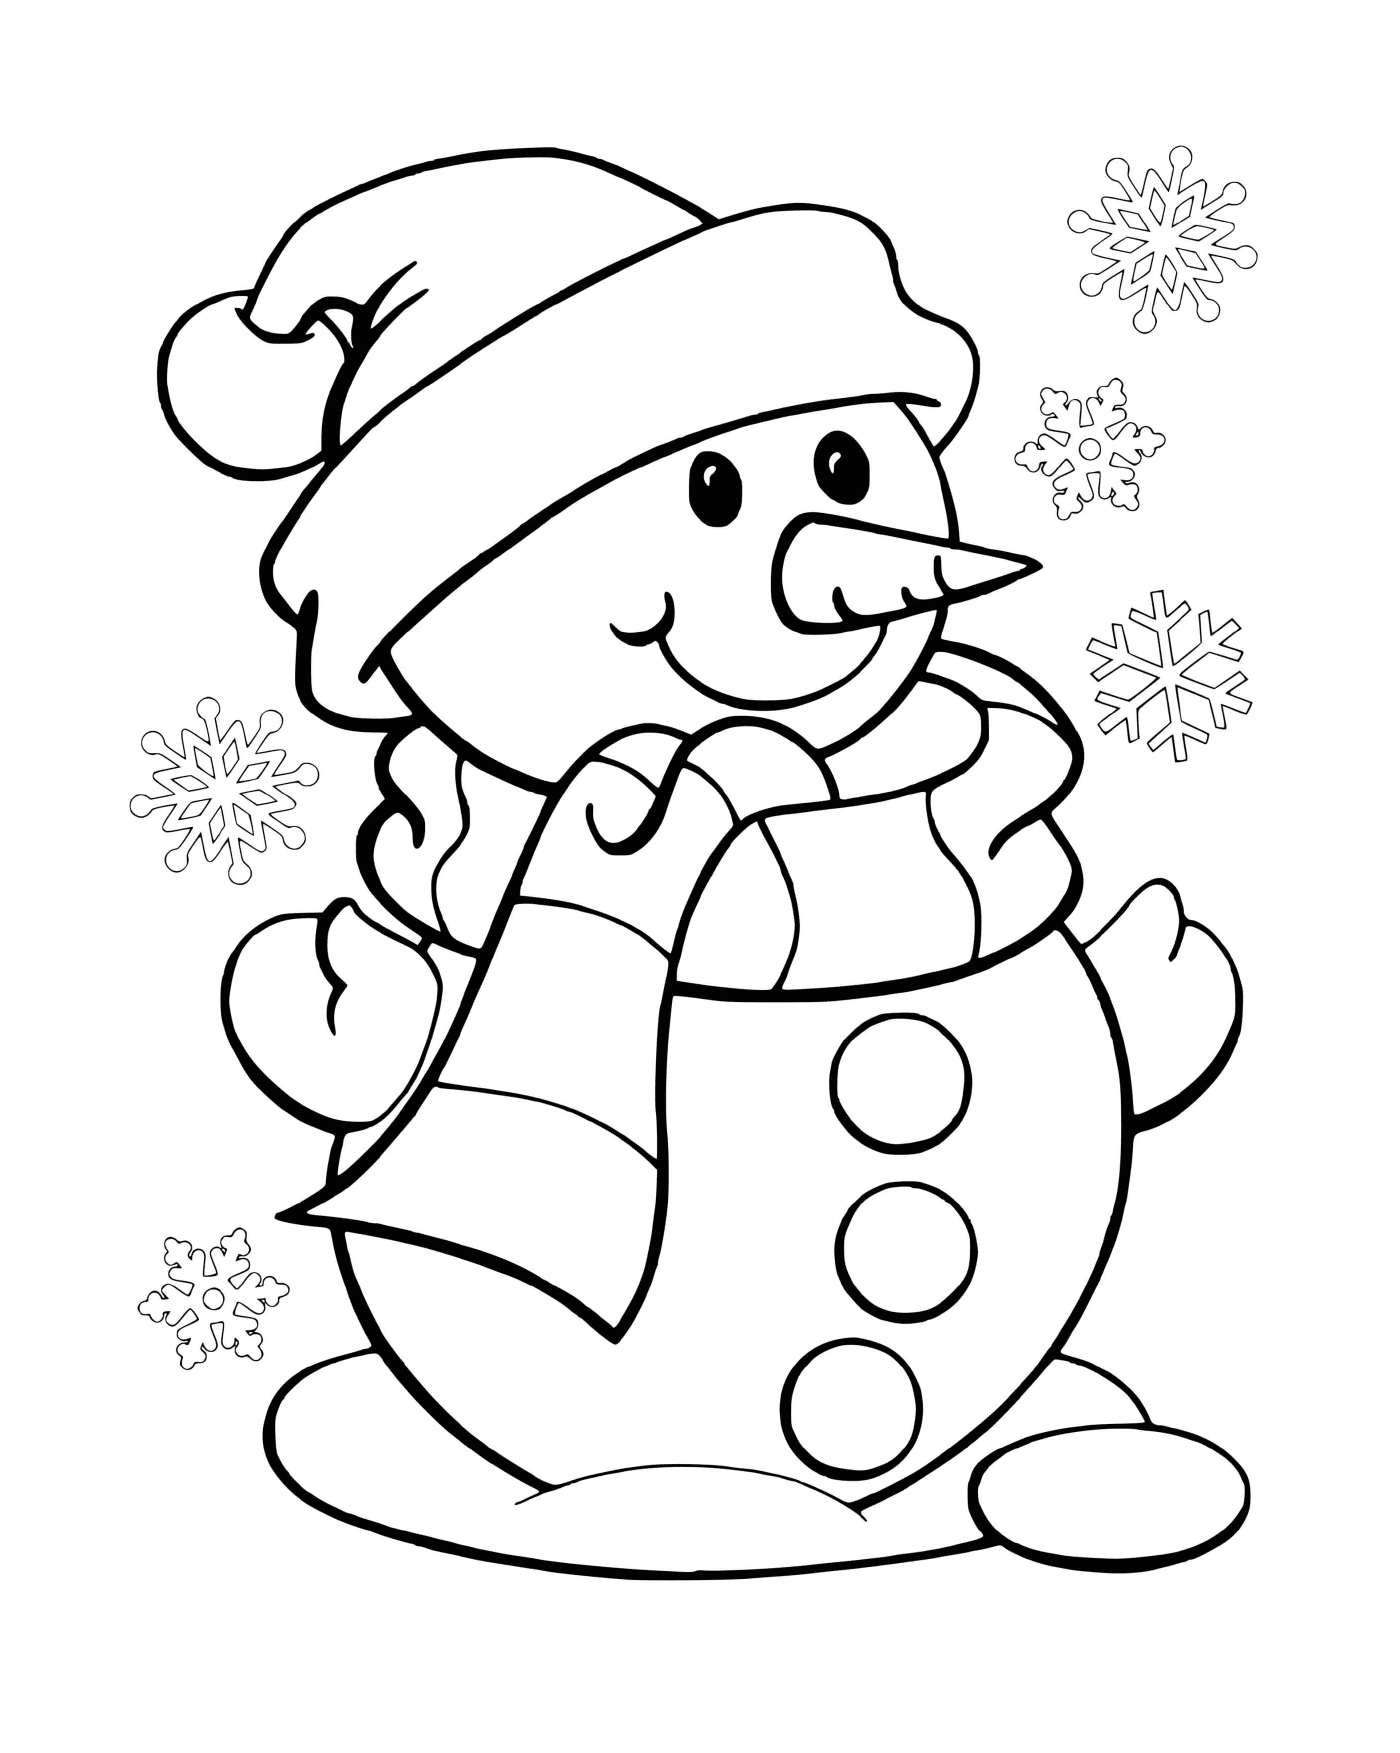   Bonhomme de neige avec des flocons de neige 